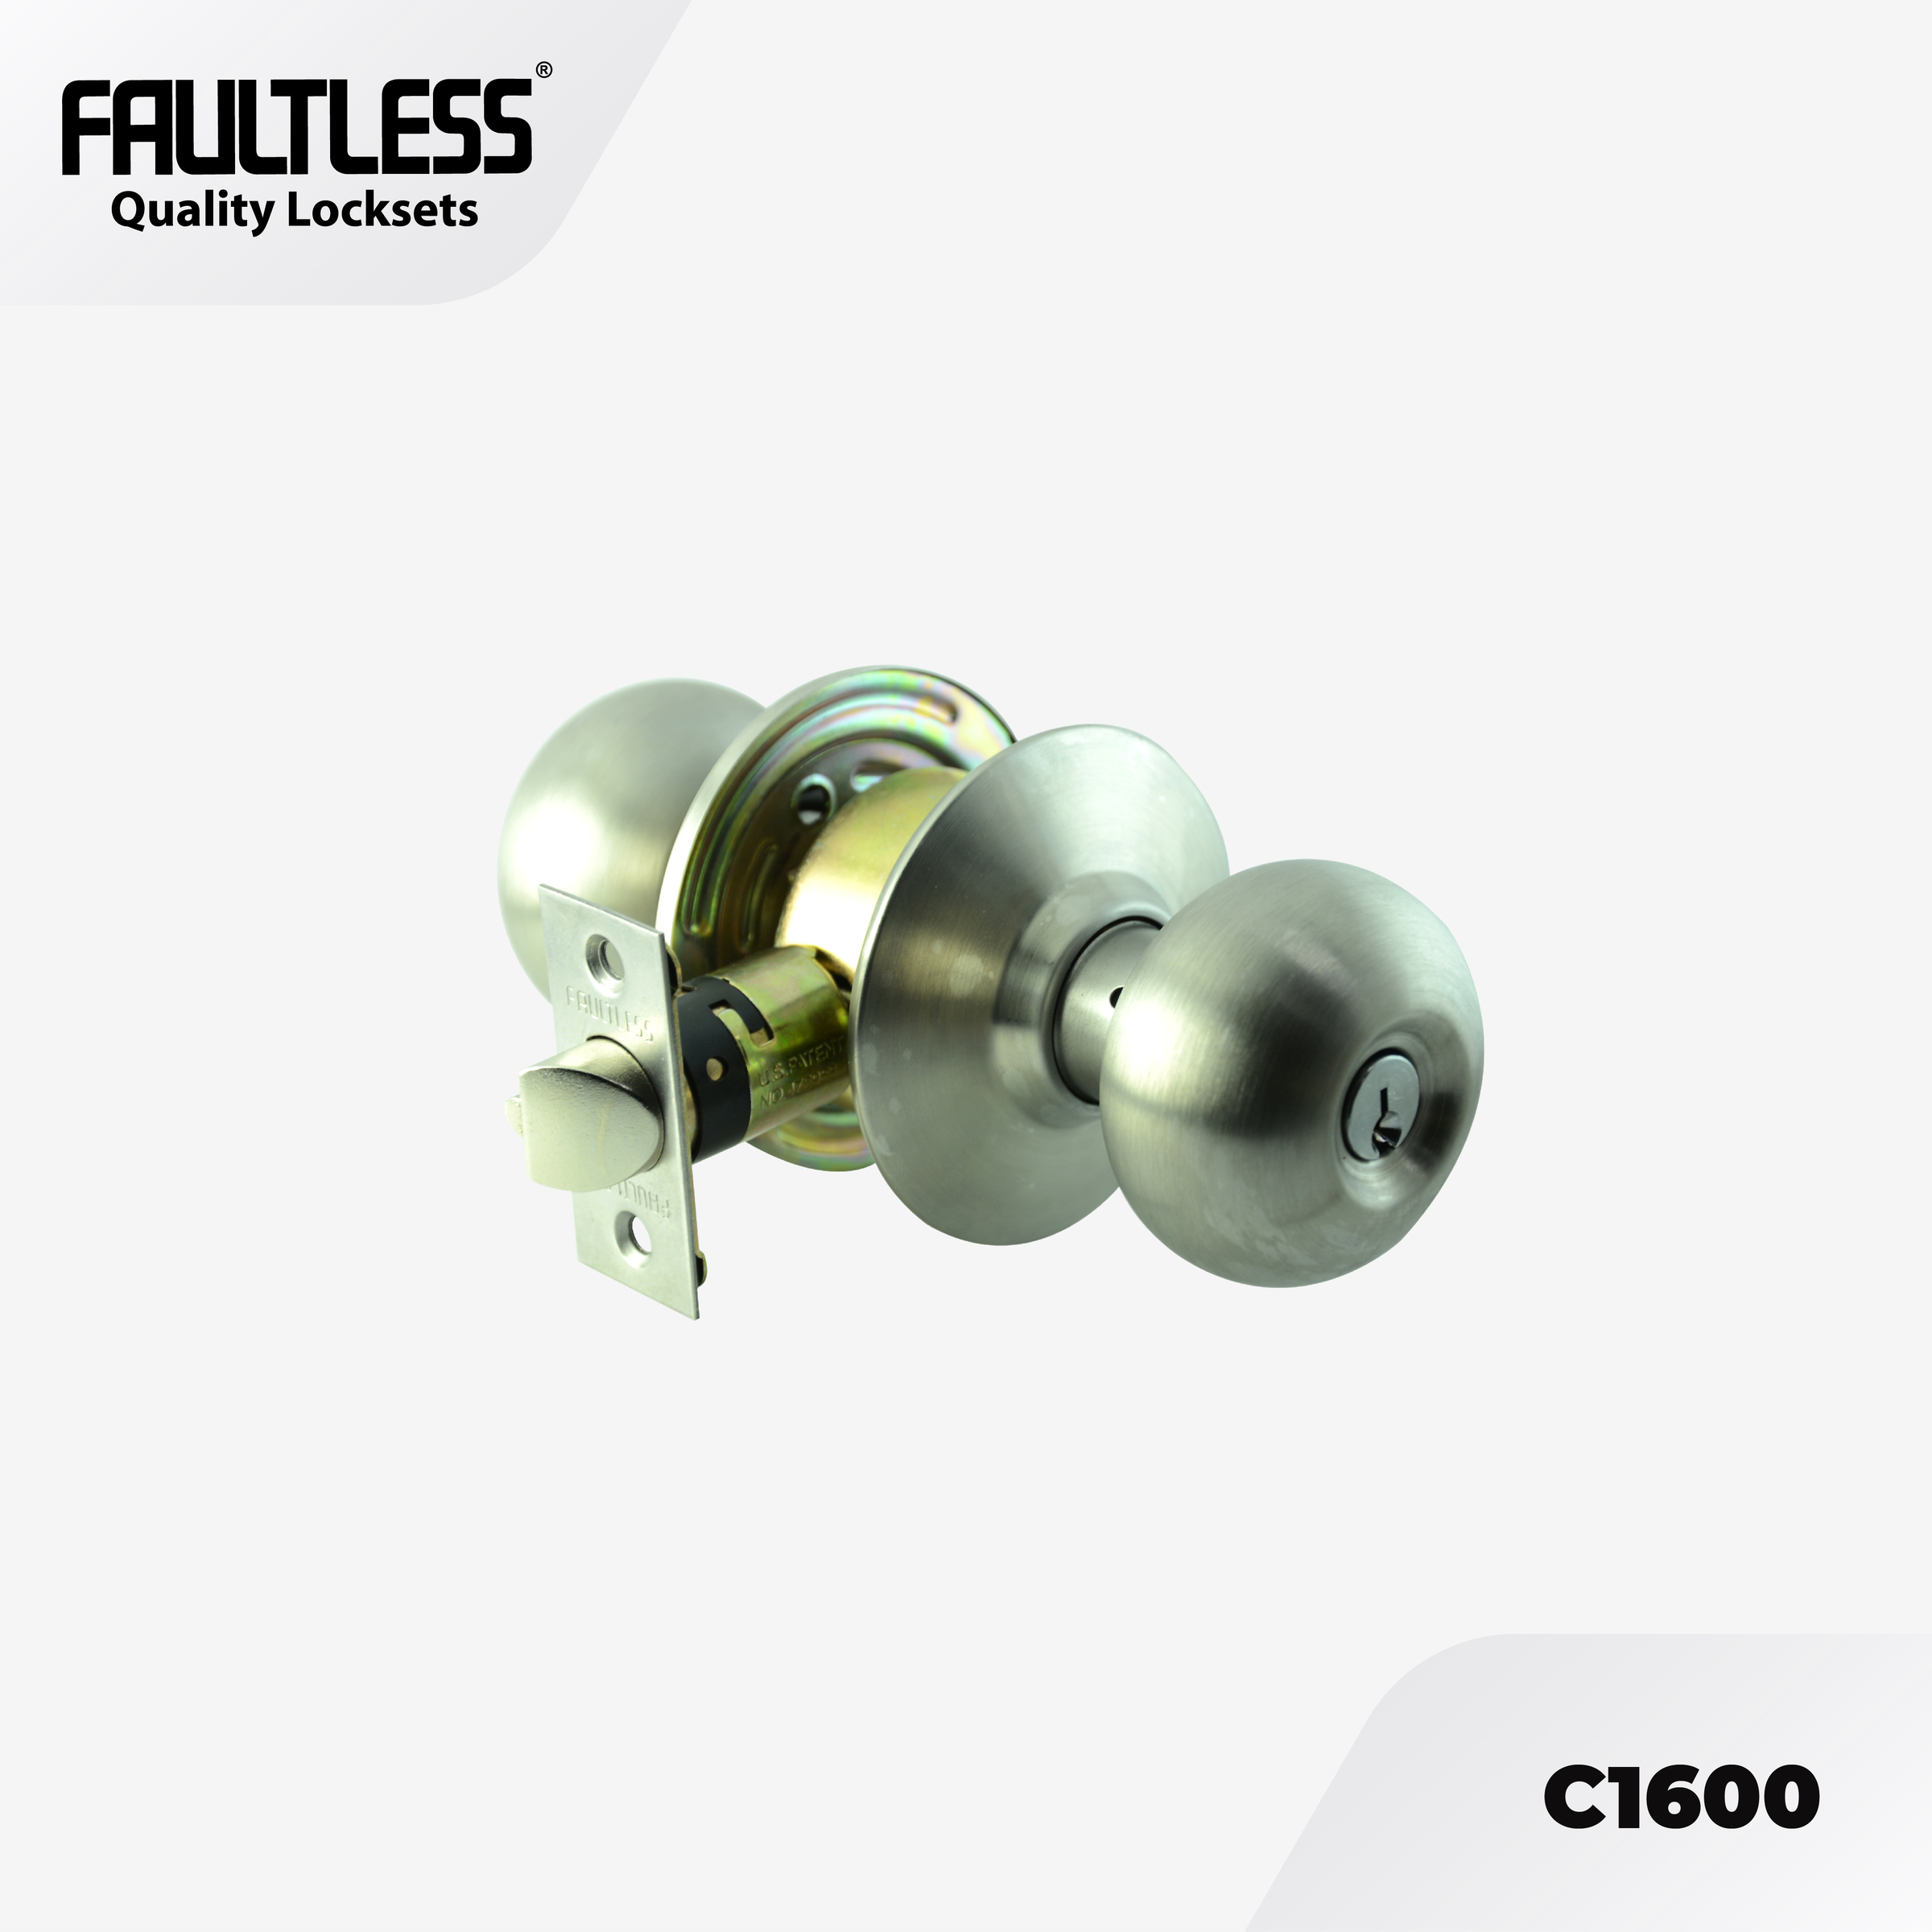 Faultless Knobset C1600